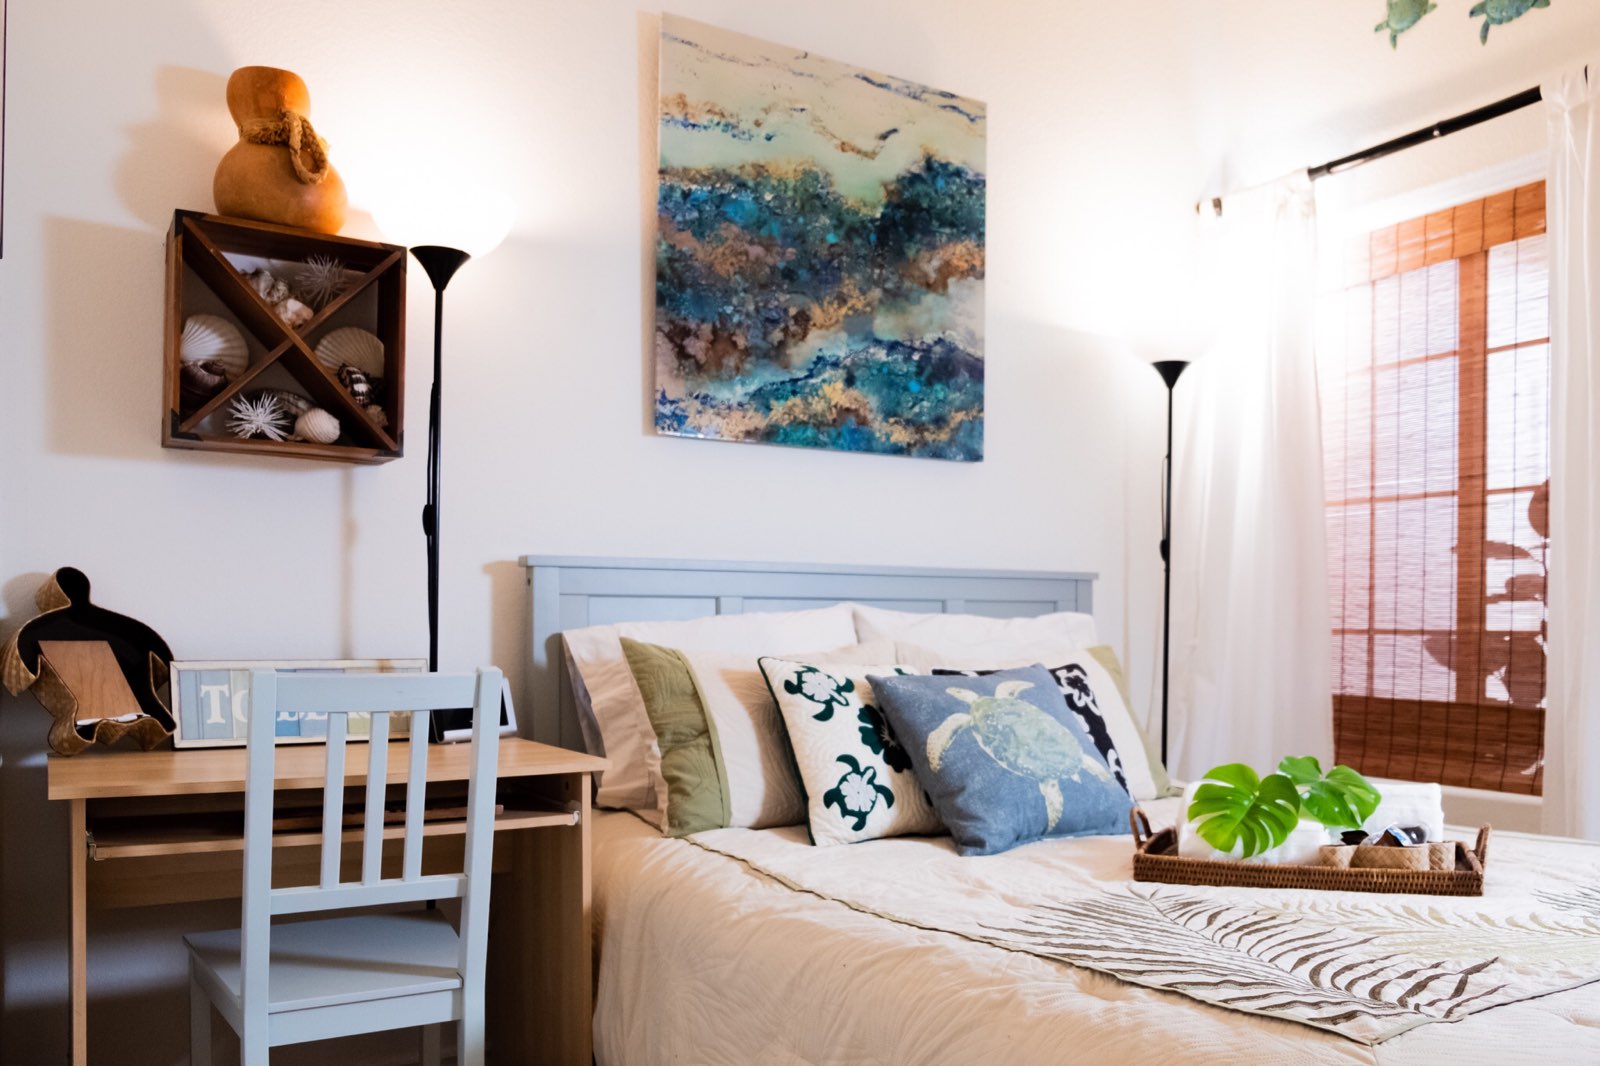 Soggiorno RILASSANTE e ispirato all'isola di OHANA - case in affitto a San  Marcos, California, Stati Uniti - Airbnb